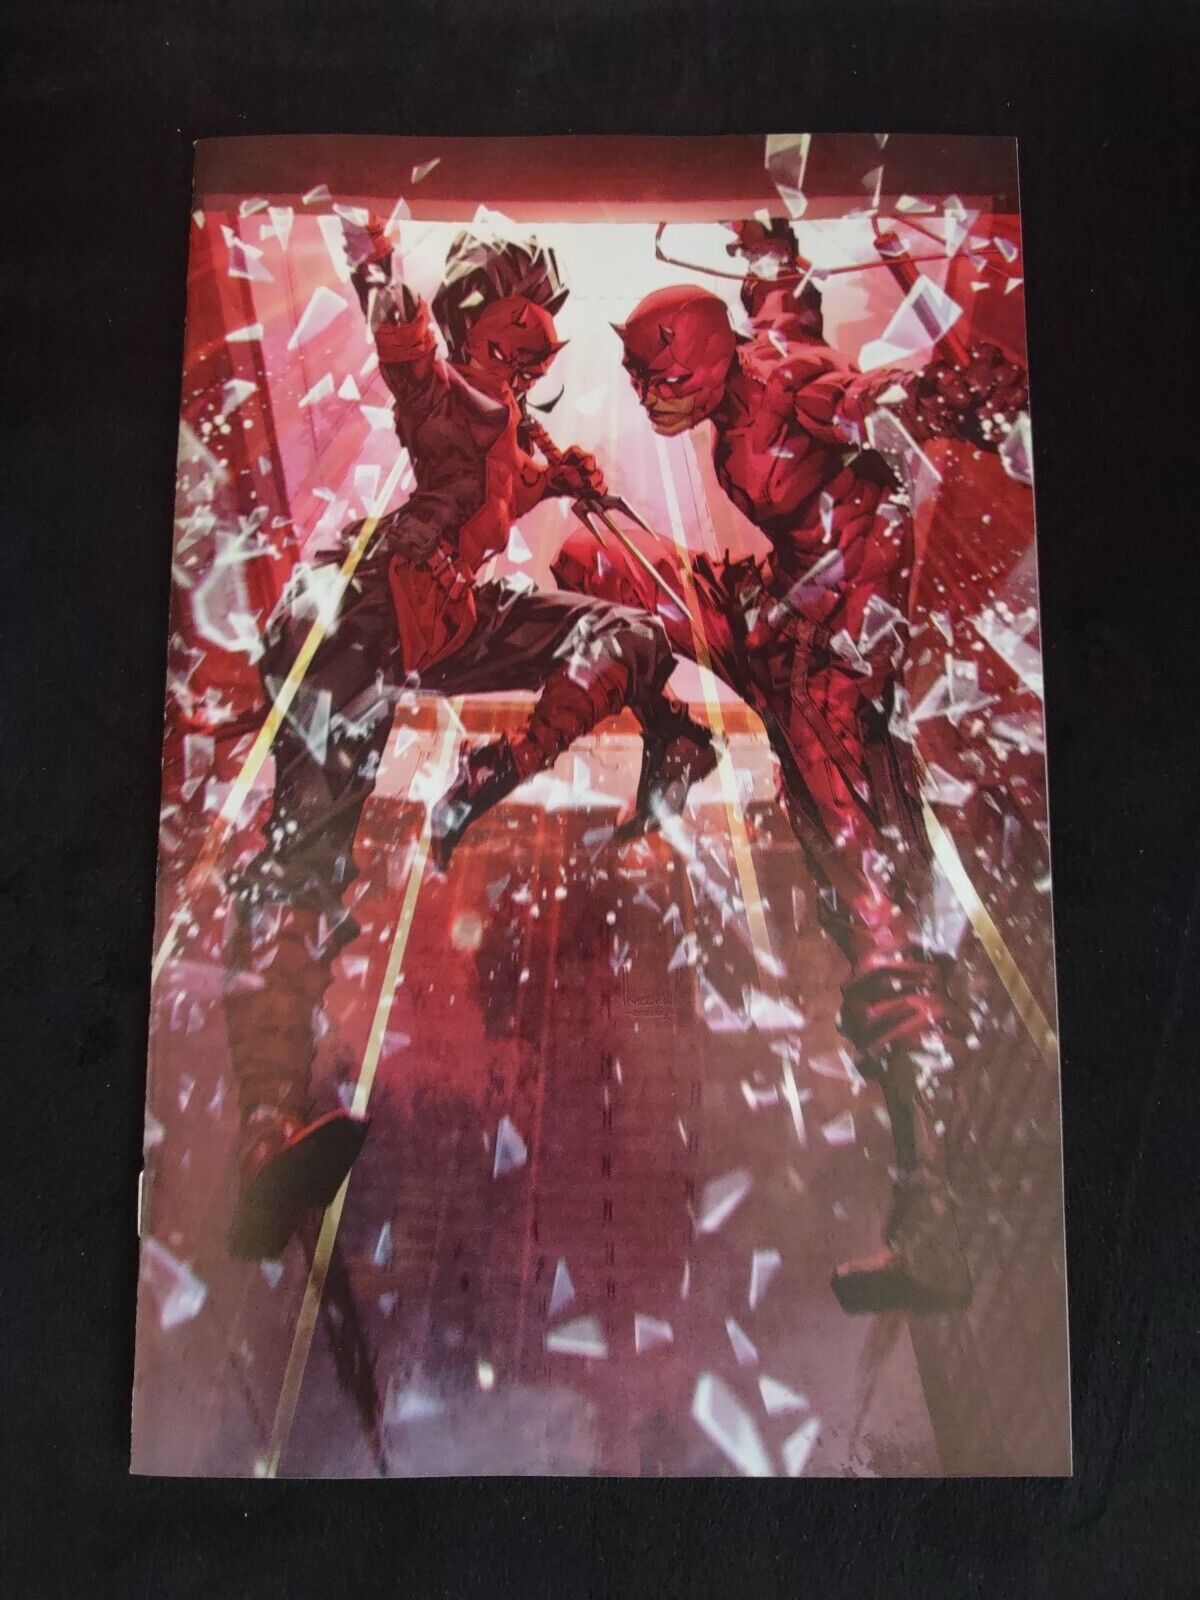 Daredevil #1, LGY #649-DE/Look Pics & Read/1st Print/Kael Ngu Virgin Exclusive.